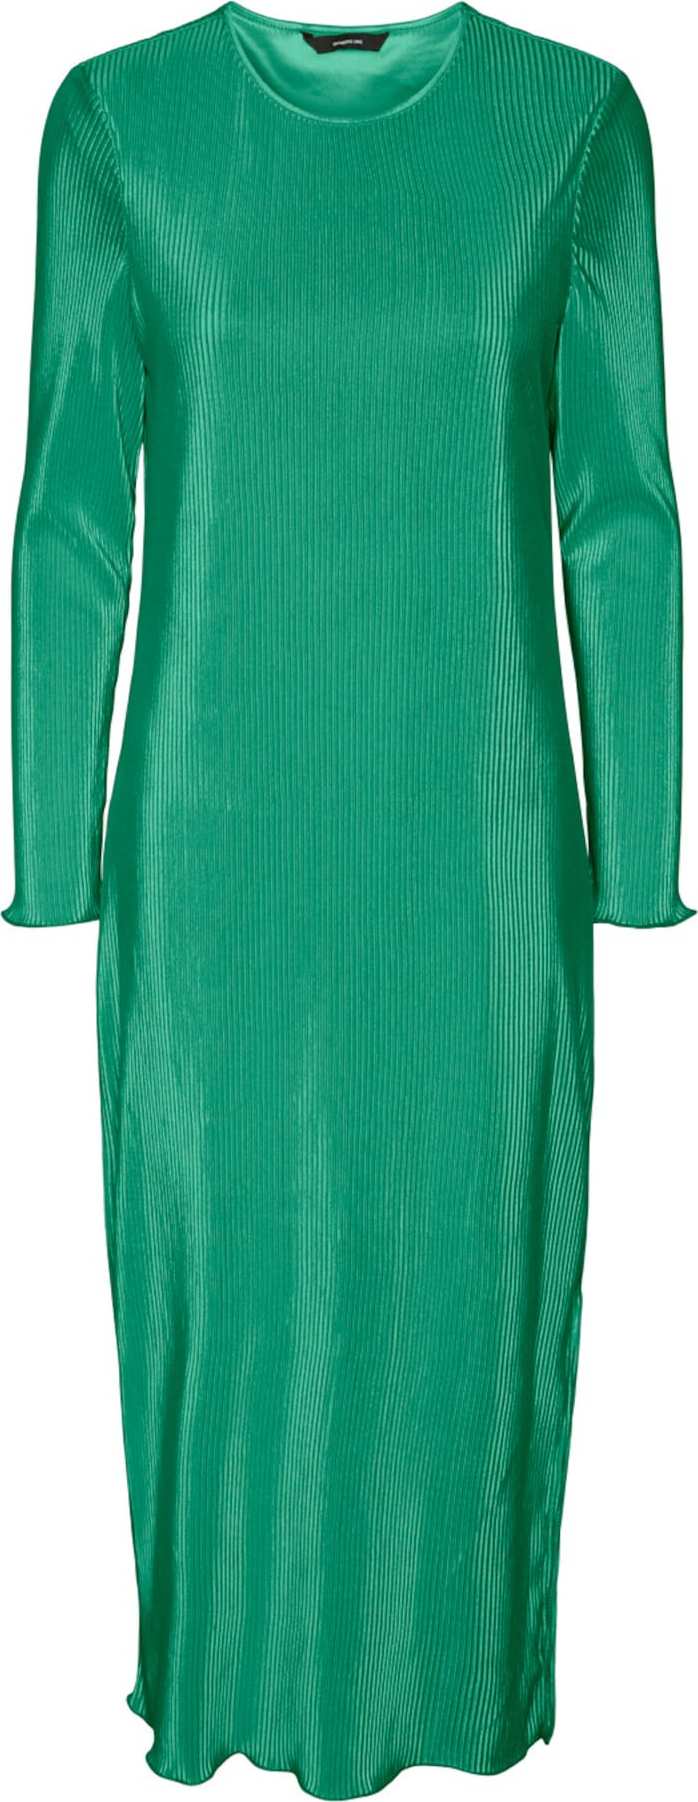 PIECES Šaty zelená